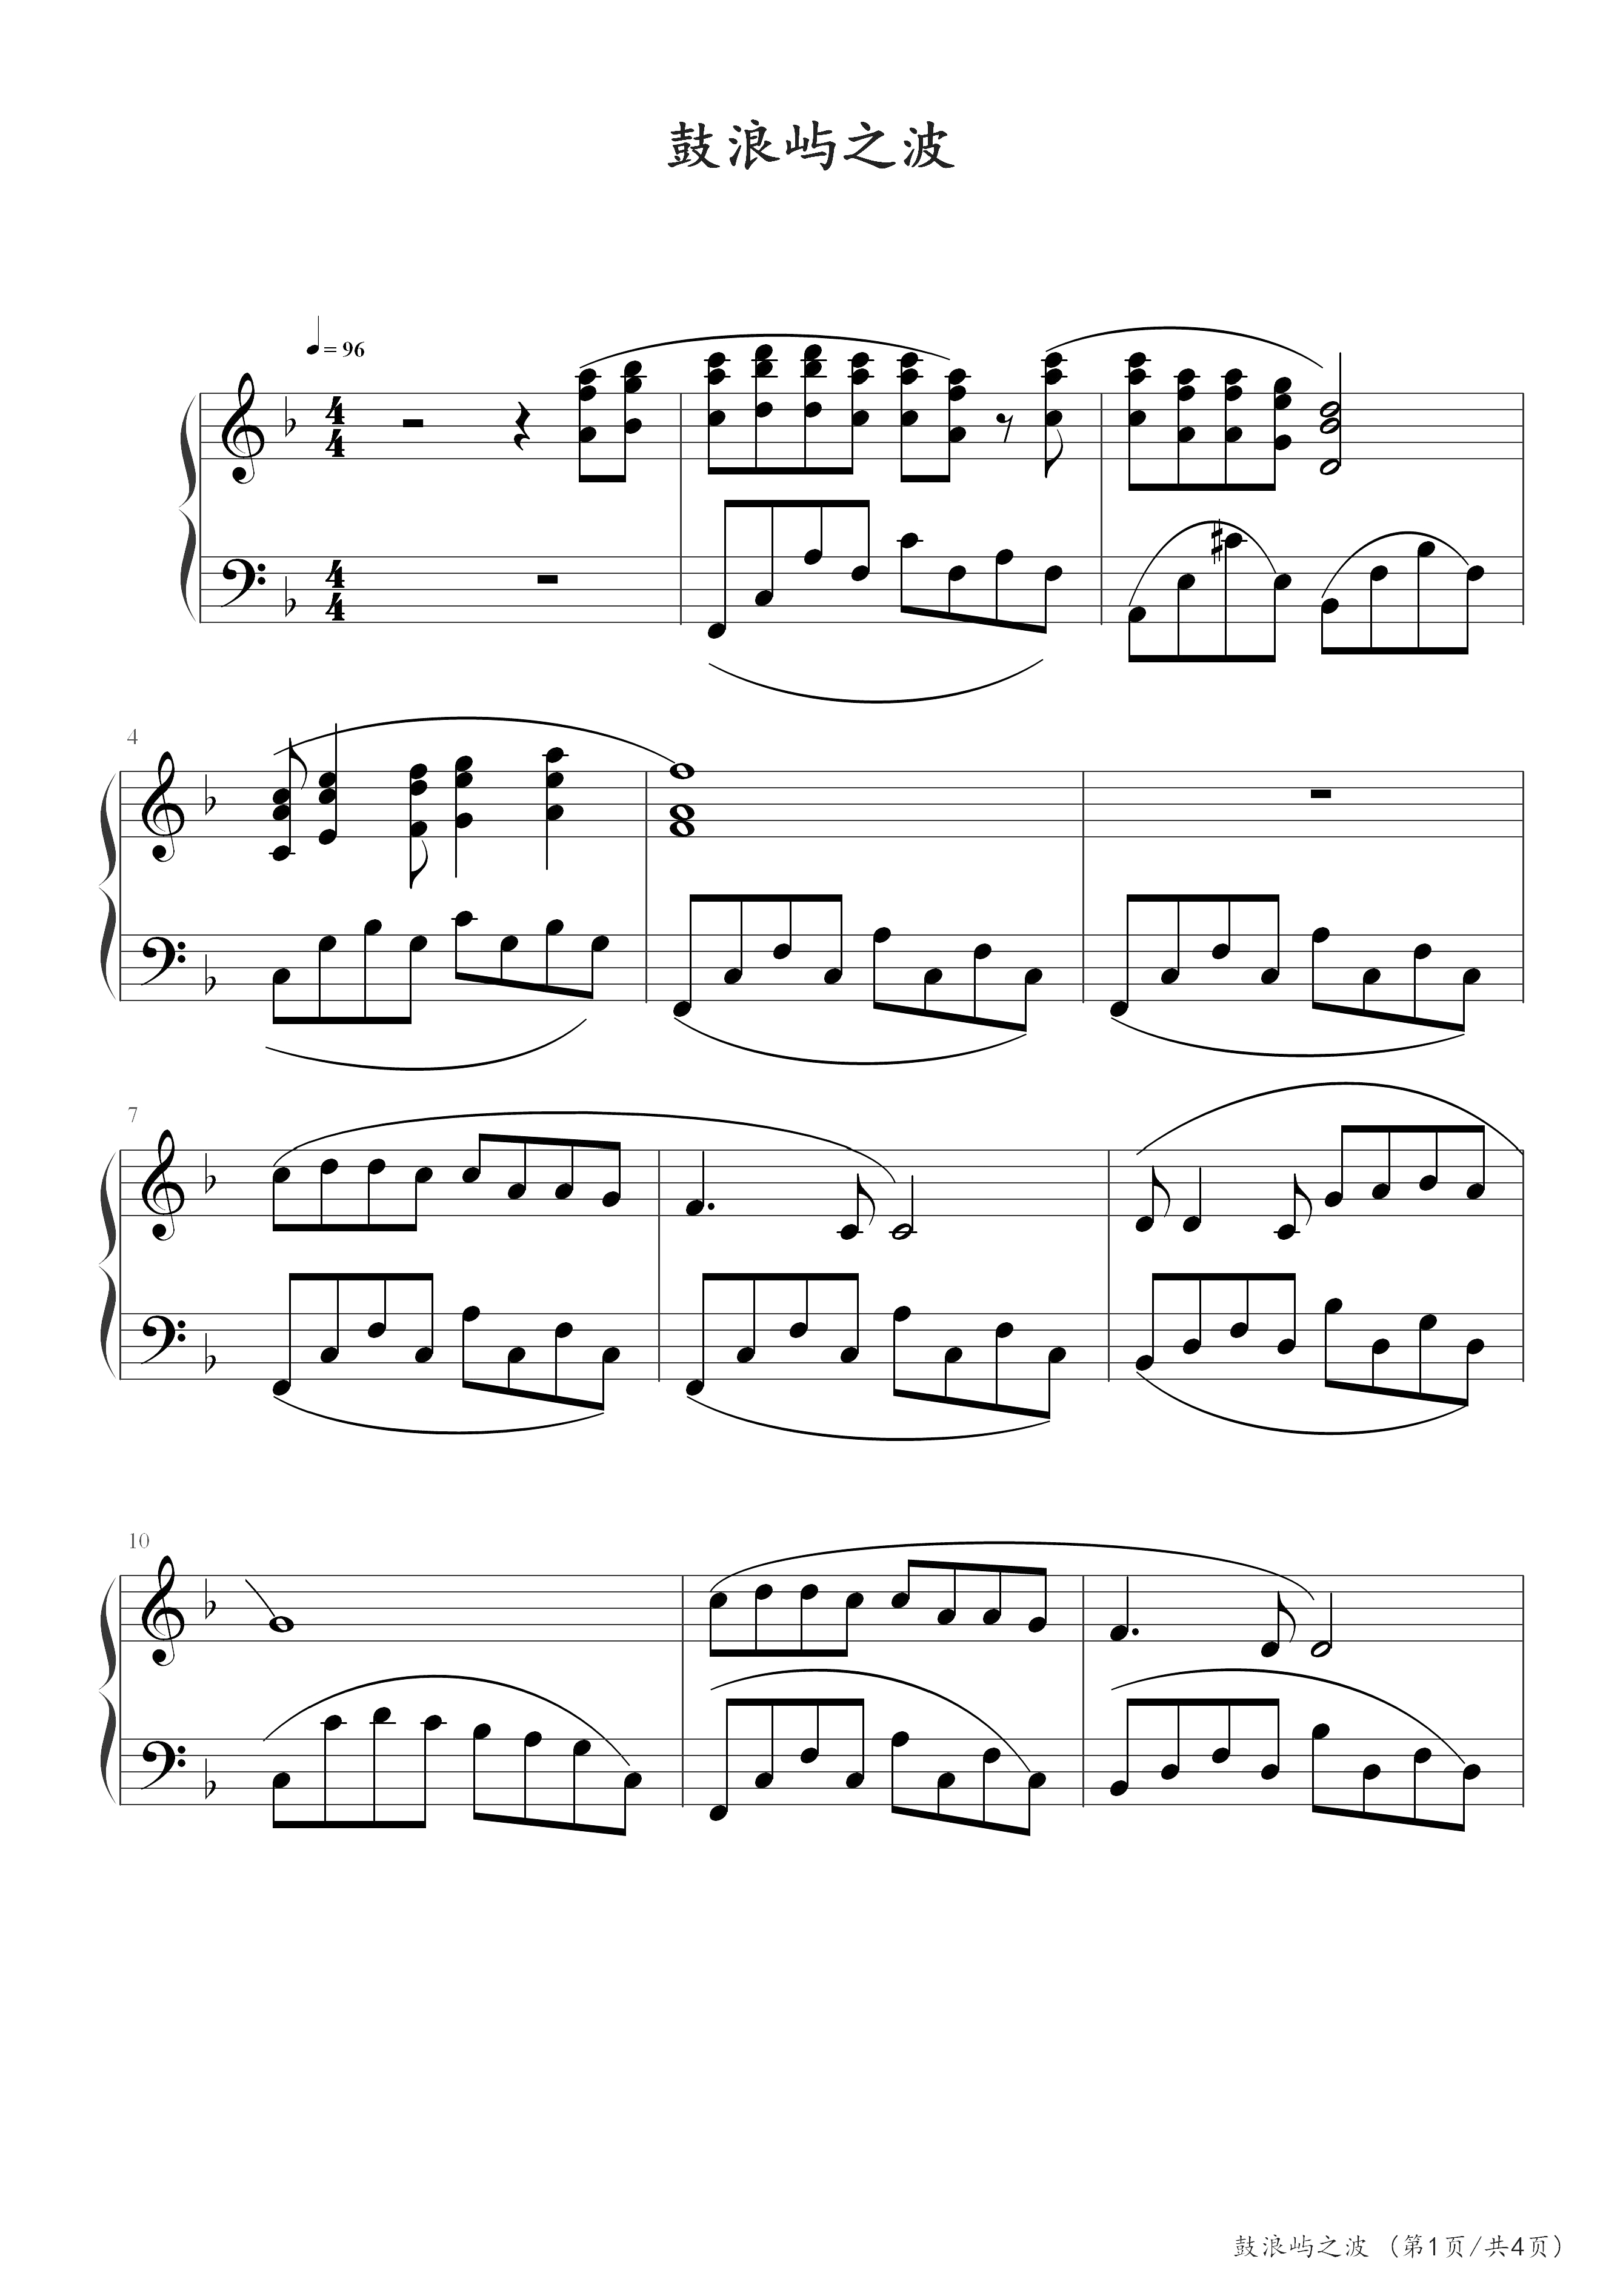 鼓浪屿之波(钢琴博物馆版)-钟立民-f调-中国钢琴作品